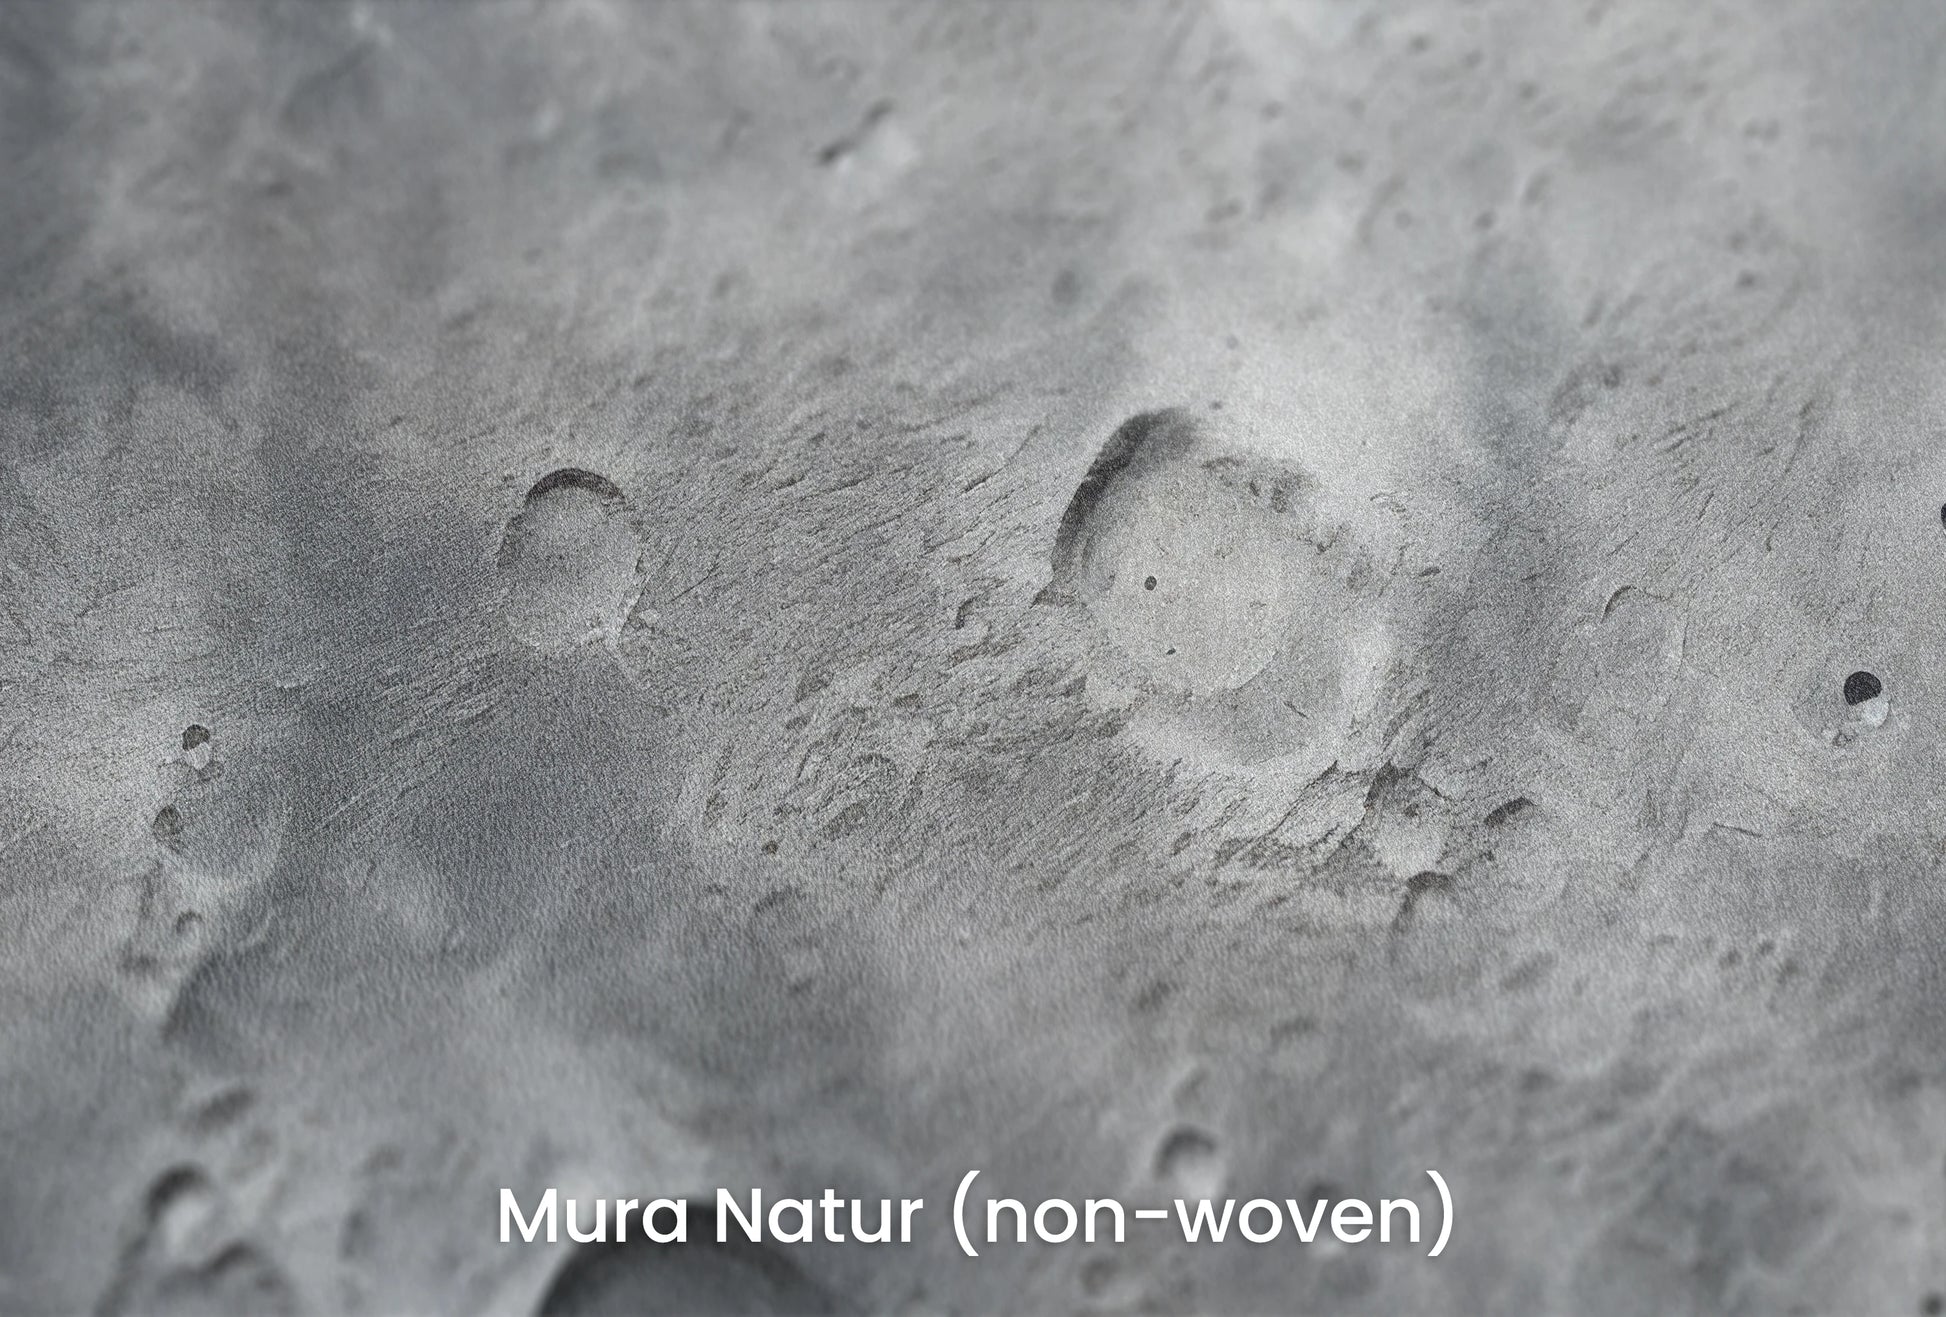 Zbliżenie na artystyczną fototapetę o nazwie Lunar Landscape #2 na podłożu Mura Natur (non-woven) - naturalne i ekologiczne podłoże.